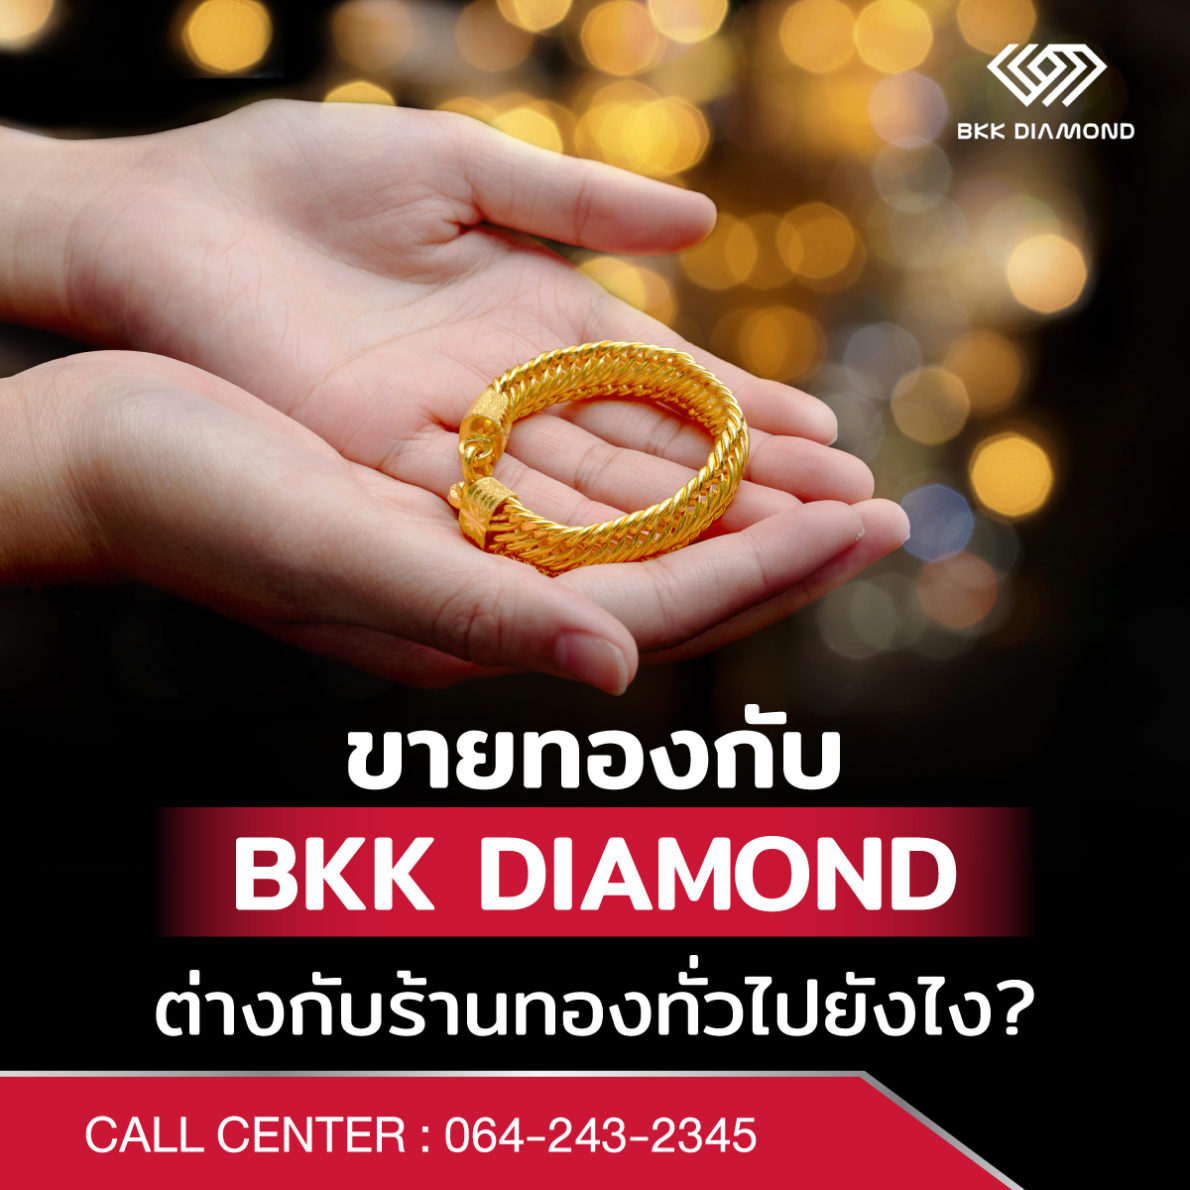 ขายทองกับ BKK DIAMOND ต่างกับร้านทองทั่วไปยังไง?